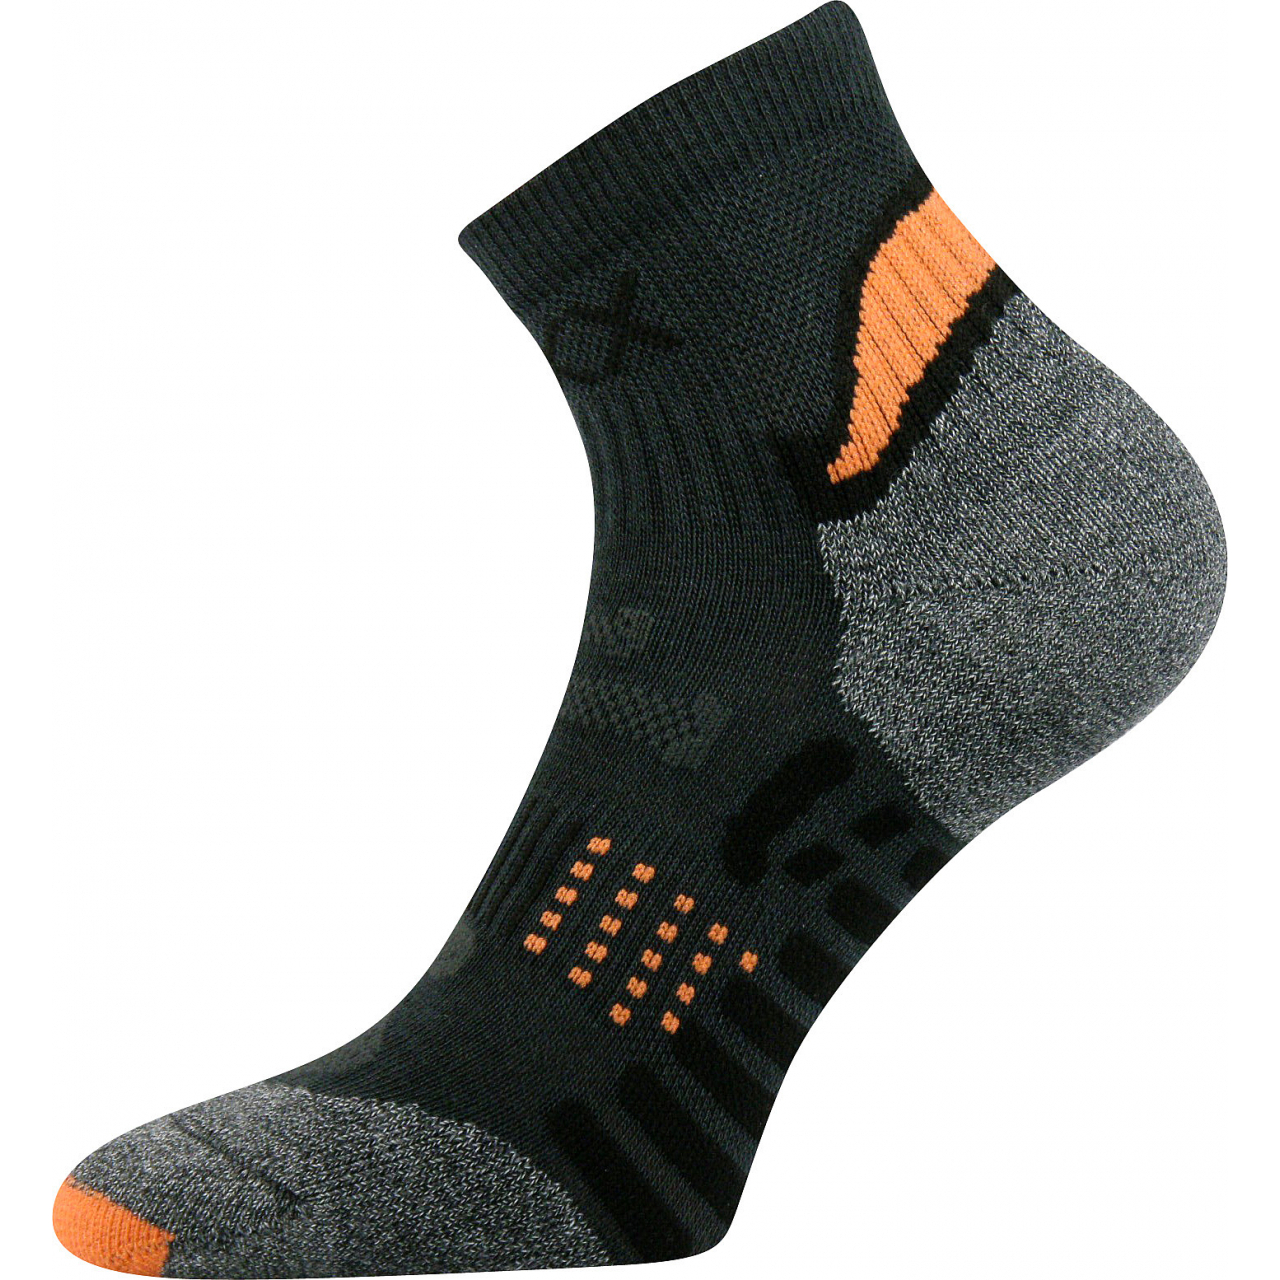 Ponožky unisex sportovní Voxx Integra - tmavě šedé-oranžové, 43-46